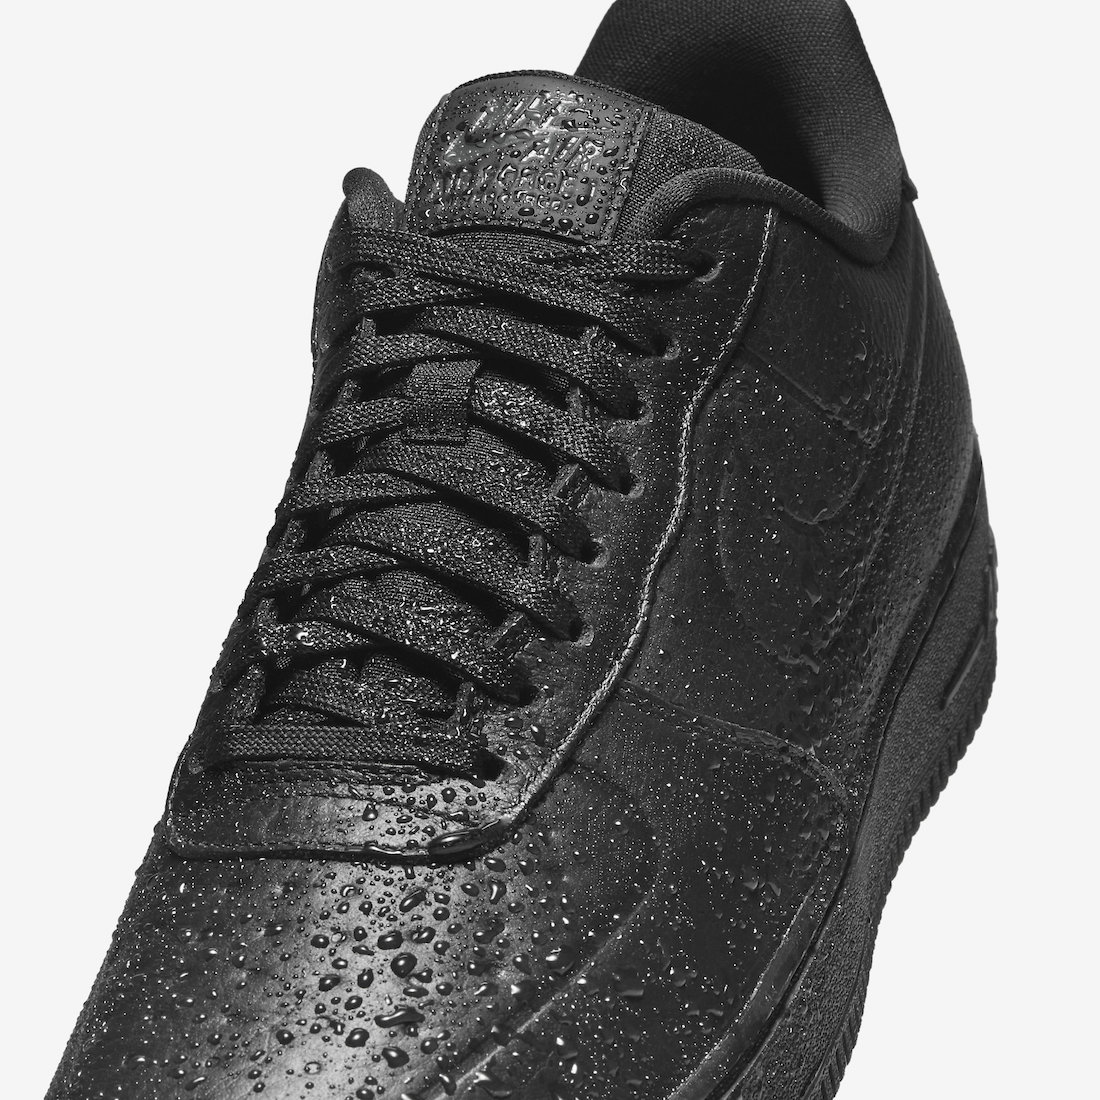 Nike Air Force 1 Low Waterproof 'Triple Black' Release Date